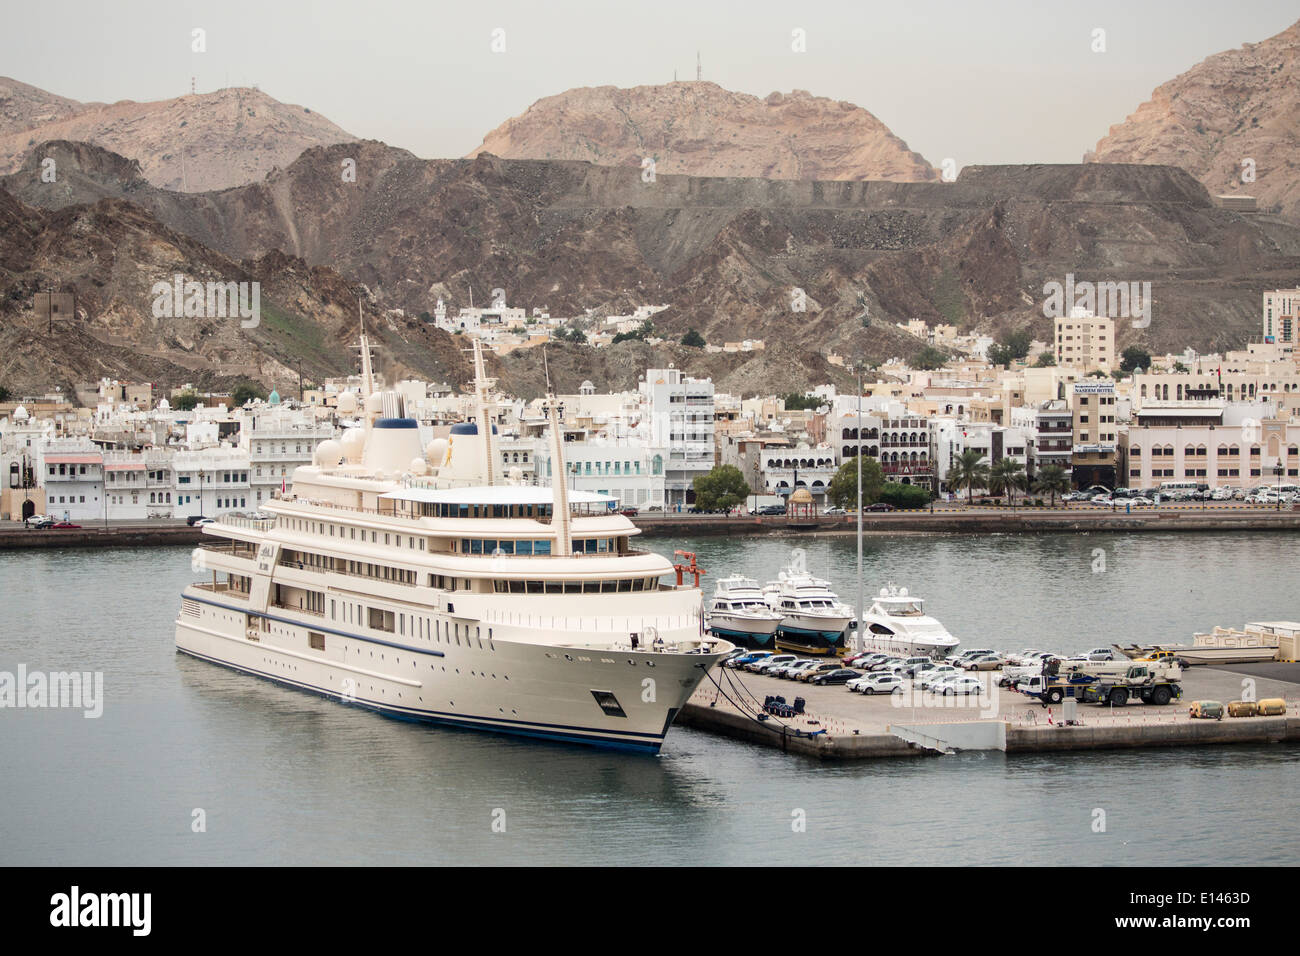 Oman, Muscat, port Mina que le Sultan Qaboos. Location du sultan. Marina d'arrière-plan et le centre de la vieille ville de Mutrah Banque D'Images